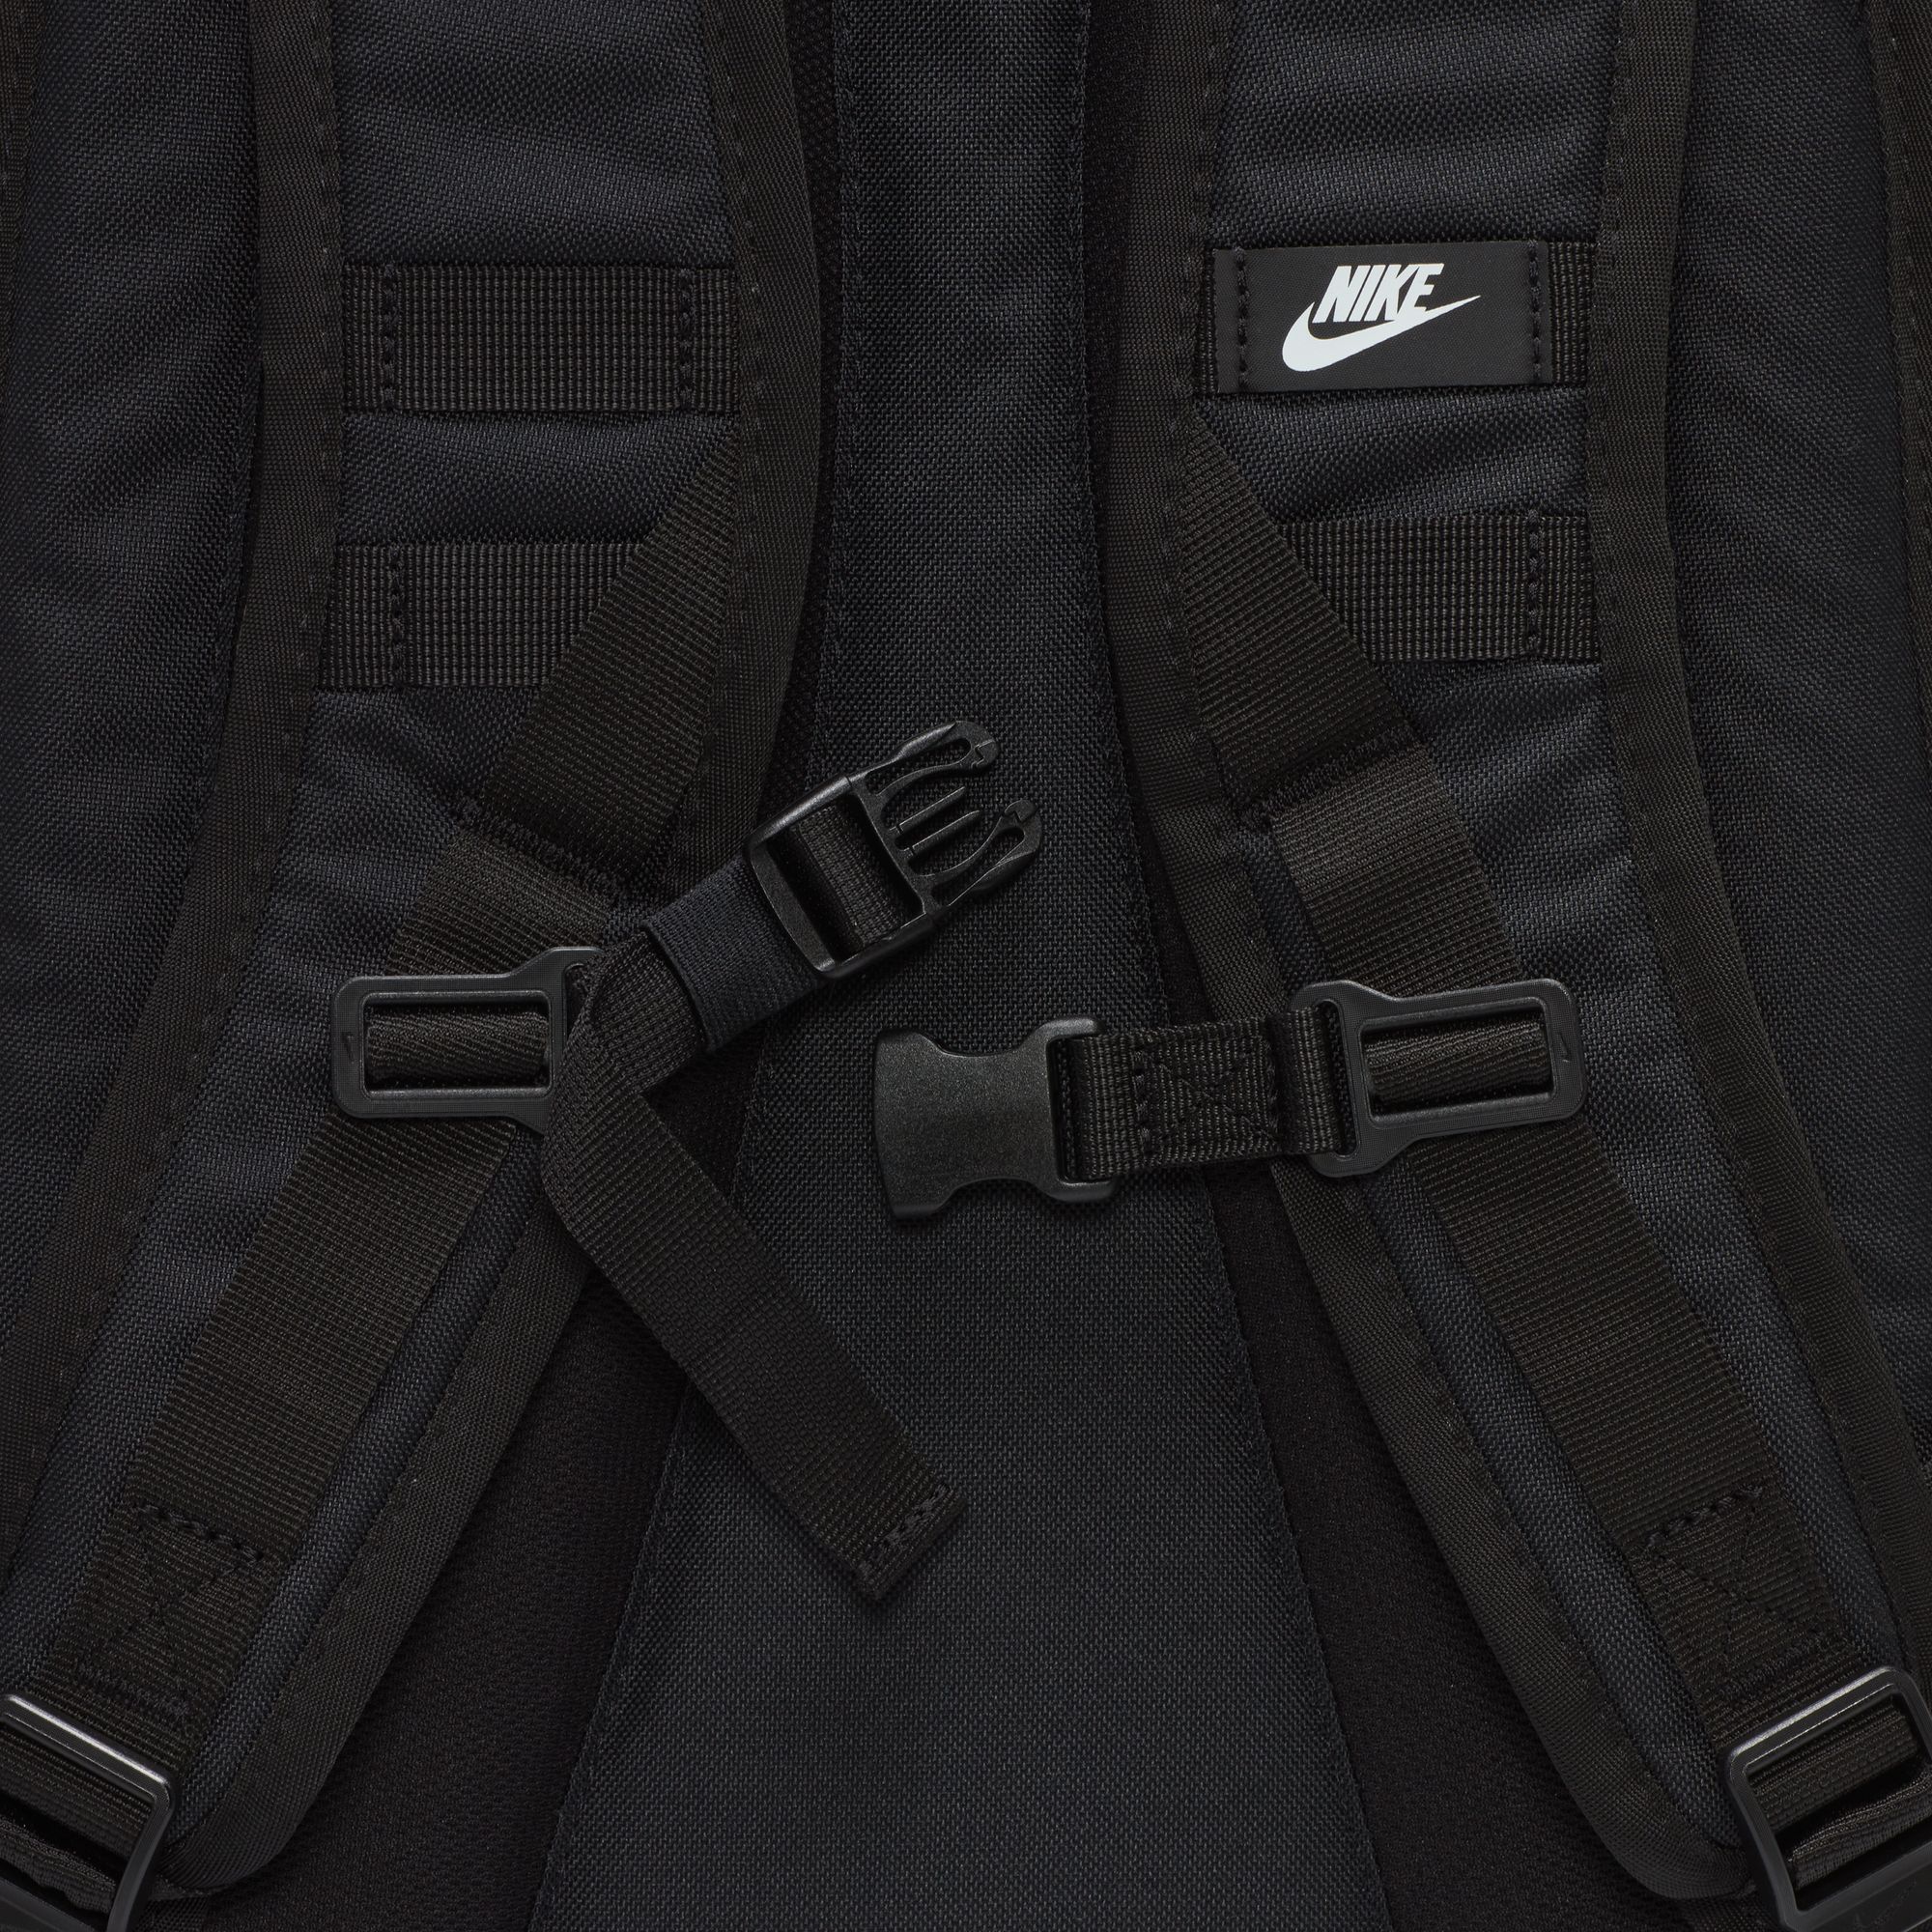 Nike SB Sportswear RPM Backpack White/Black